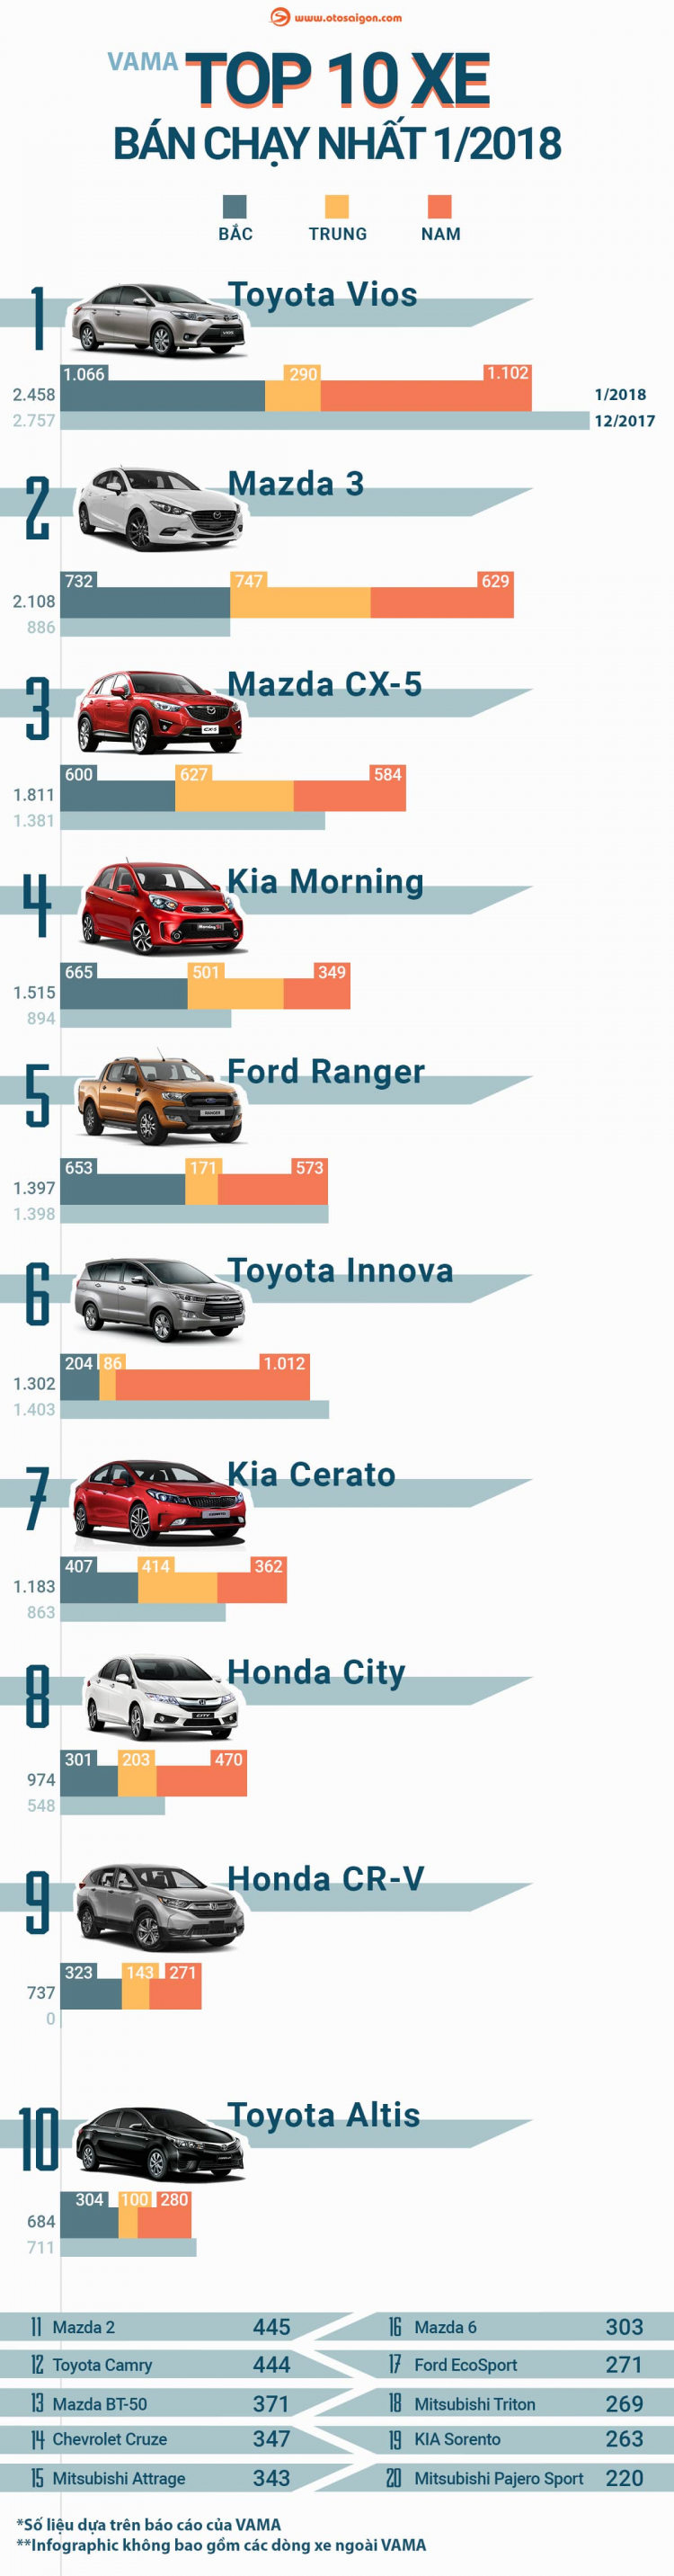 [Infographic] Top 20 mẫu xe bán chạy nhất tháng 1/2018